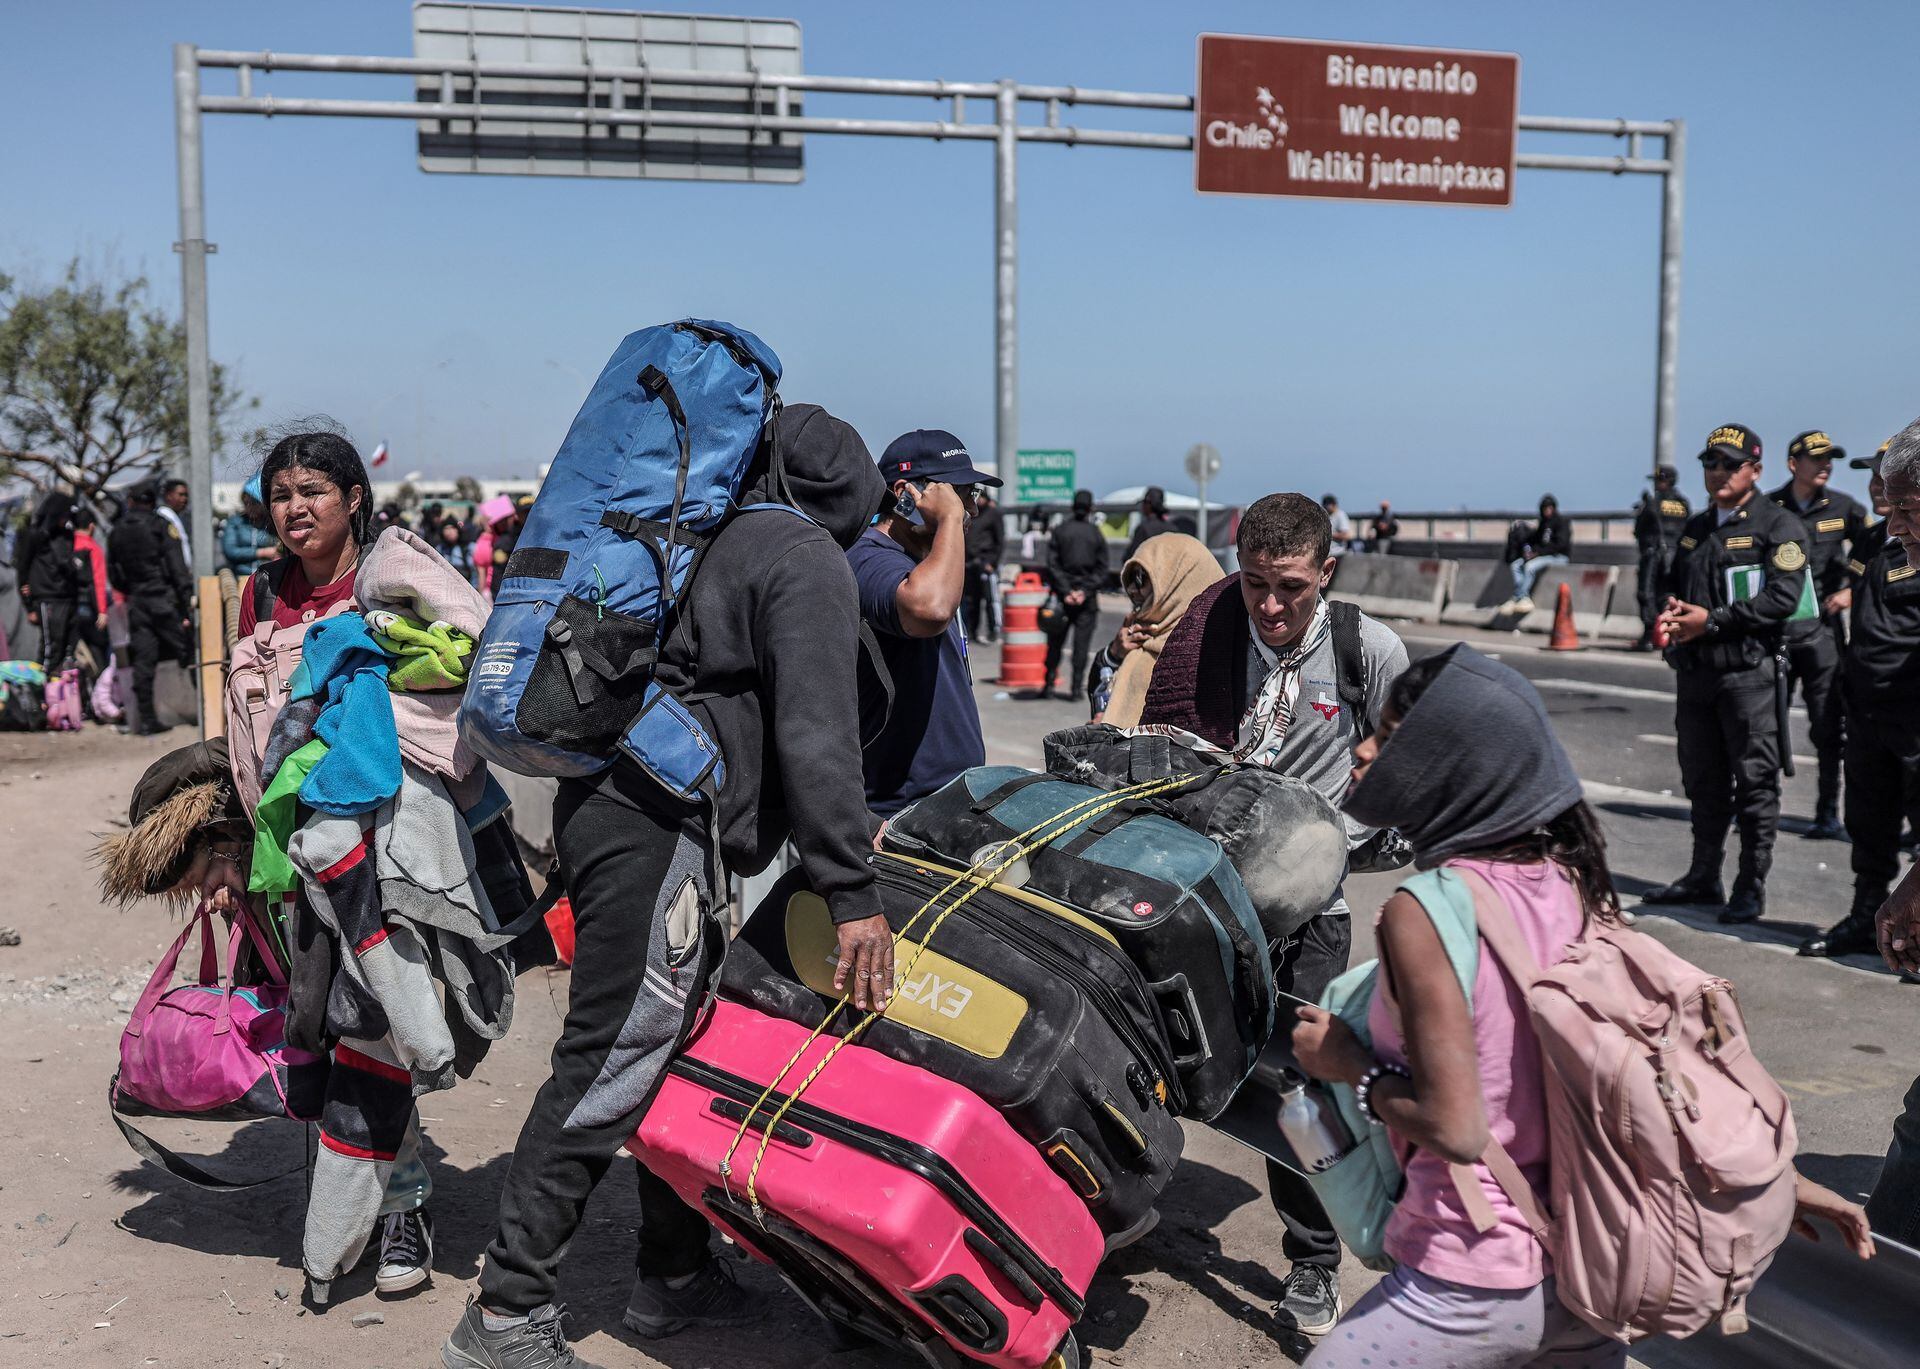 Migrantes de diferentes nacionalidades son escoltados por policías peruanos a una oficina de migración en Tacna, en la frontera entre Perú y Chile, el 28 de abril de 2023. - Chile confirmó que el 7 de mayo partirá un primer vuelo de repatriación para cientos de migrantes venezolanos varados en el fronteriza con Perú que buscan regresar a su país de origen desde hace semanas, dijo el 4 de mayo el canciller chileno, Alberto van Klaveren.